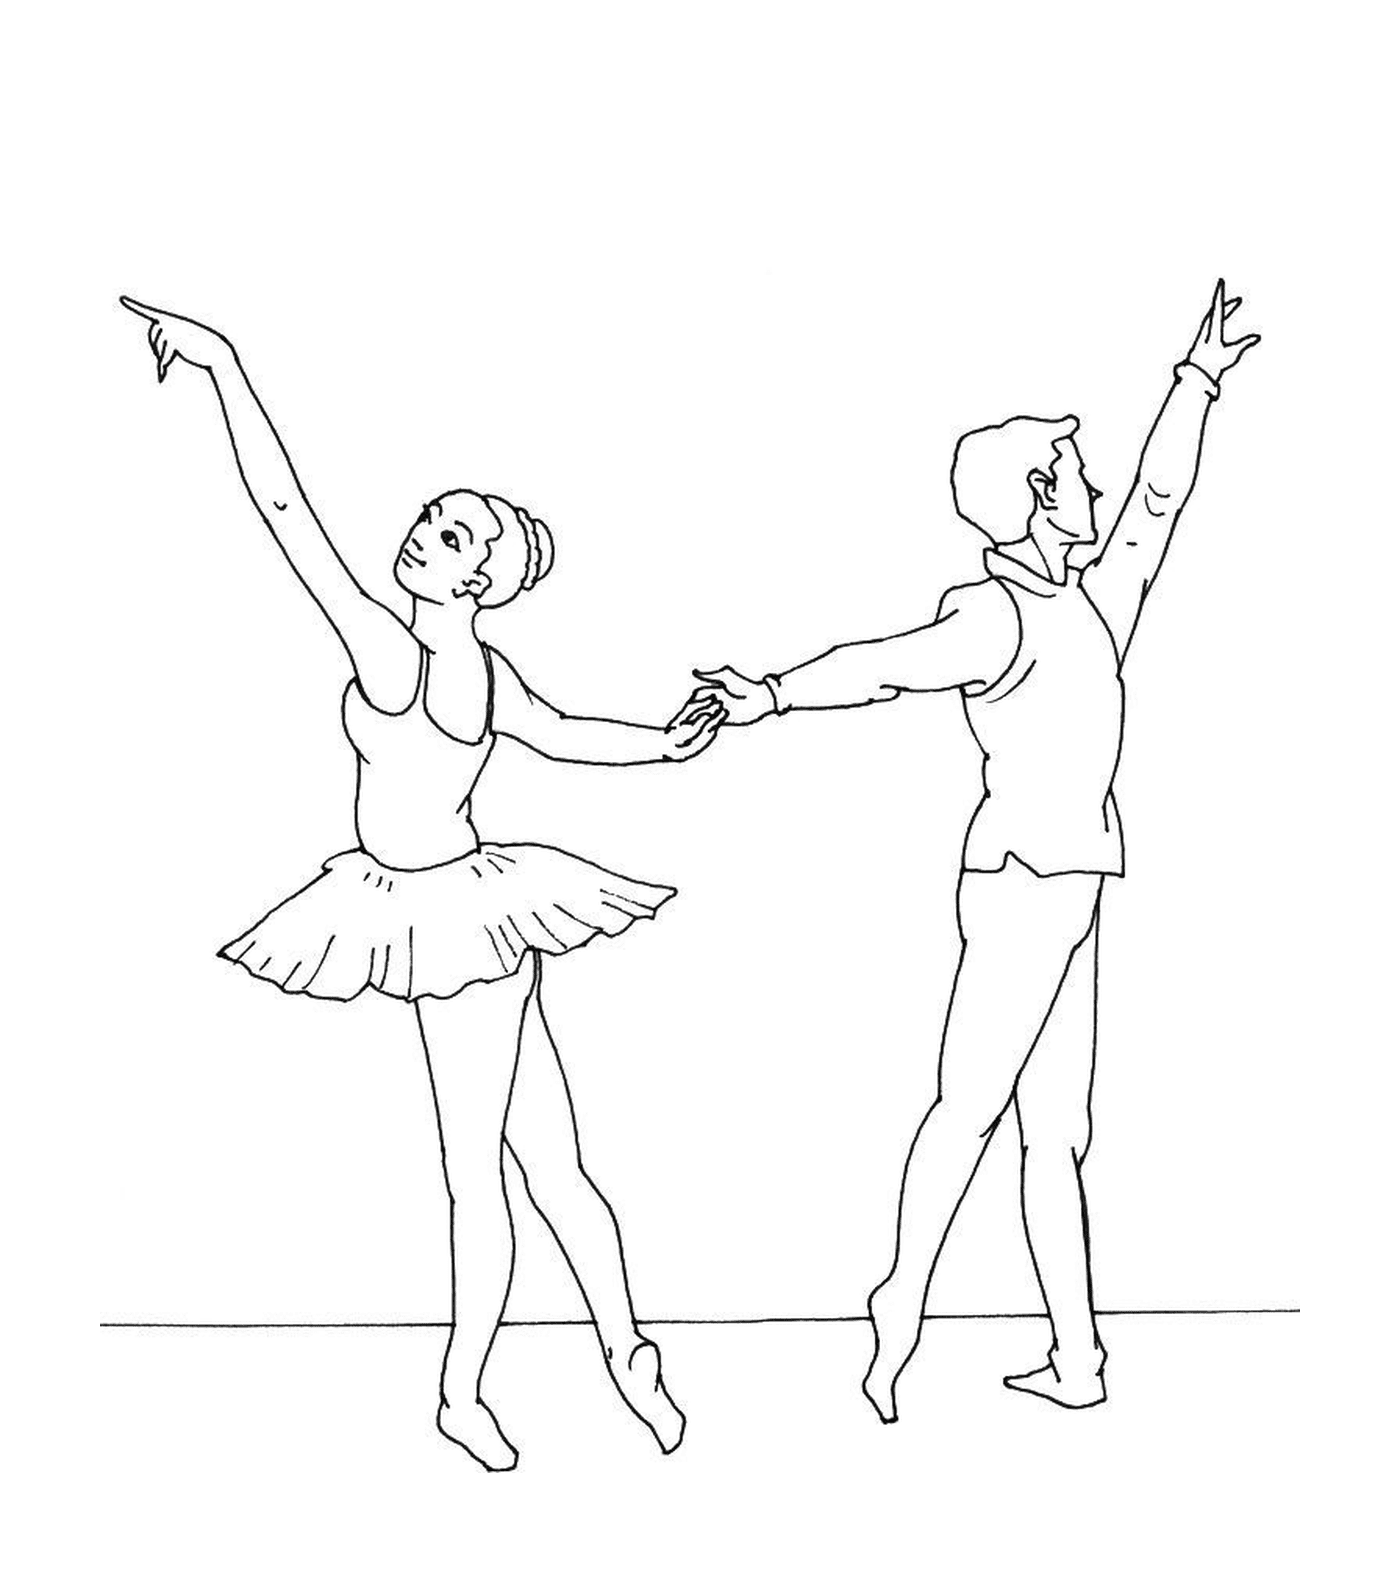  Танцор и танцор держатся за руку 